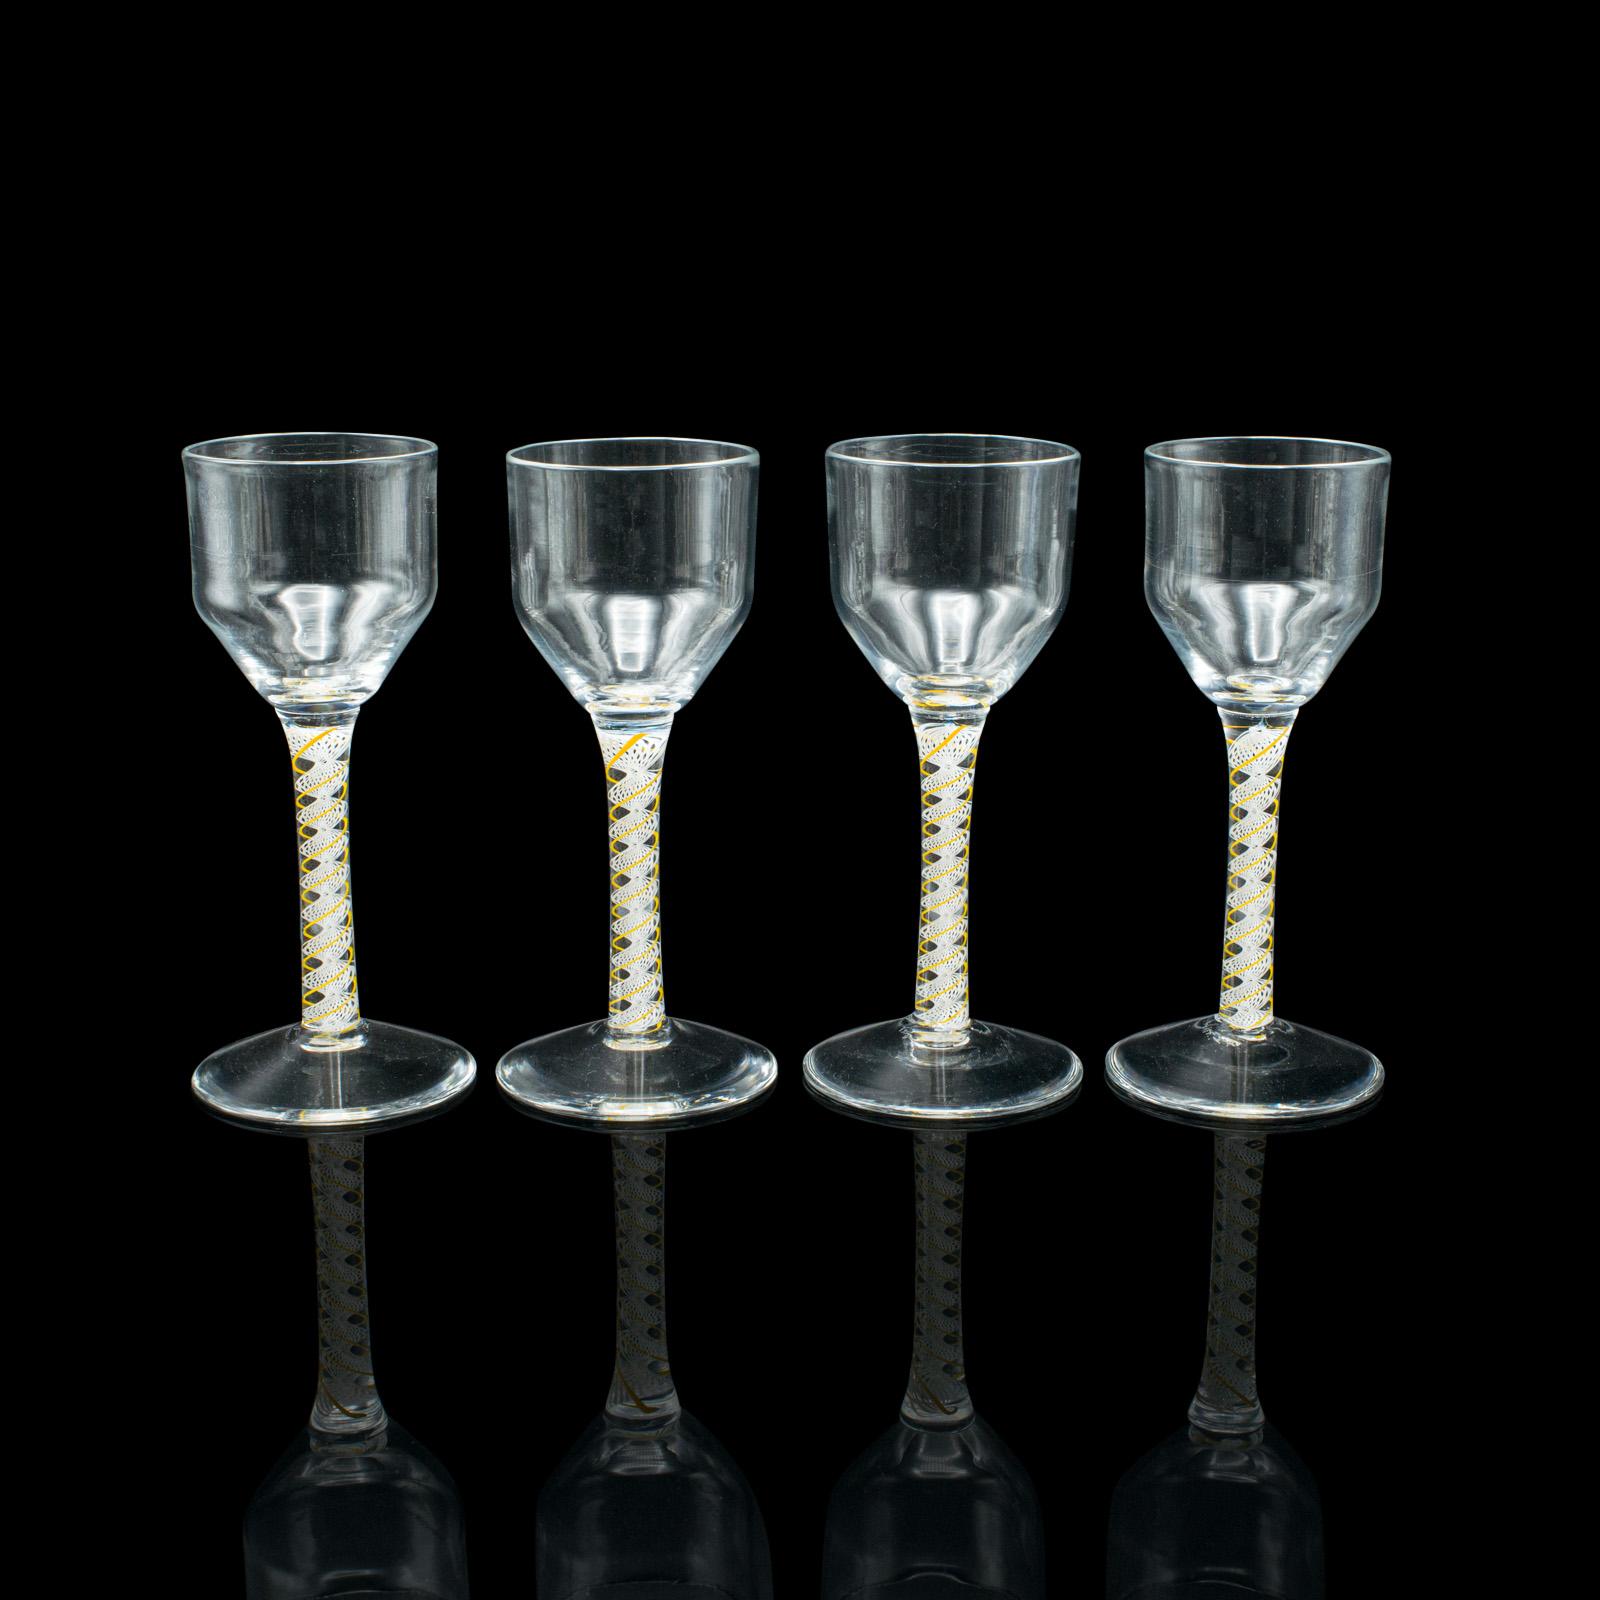 Dies ist ein Satz von 8 Aperitifgläsern im Vintage-Stil. Ein englisches Spirituosen- oder Weinglas mit gedrehtem Stiel aus dem späten 20. Jahrhundert.

Schenken Sie einen Aperitif in diesen schönen Gläsern ein, ideal als Ergänzung zu einem Amuse